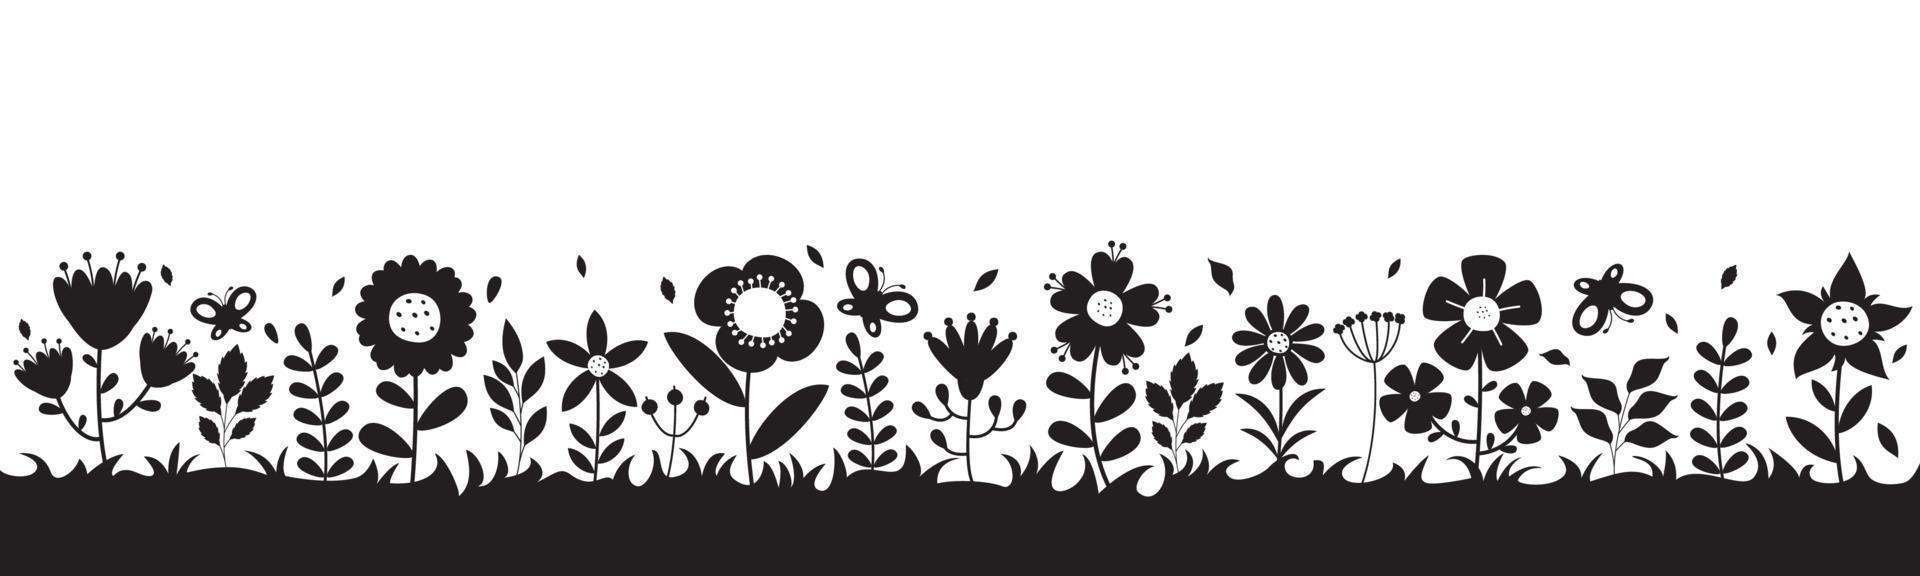 Silhouette Zeichnung von Blumen und Pflanzen vektor